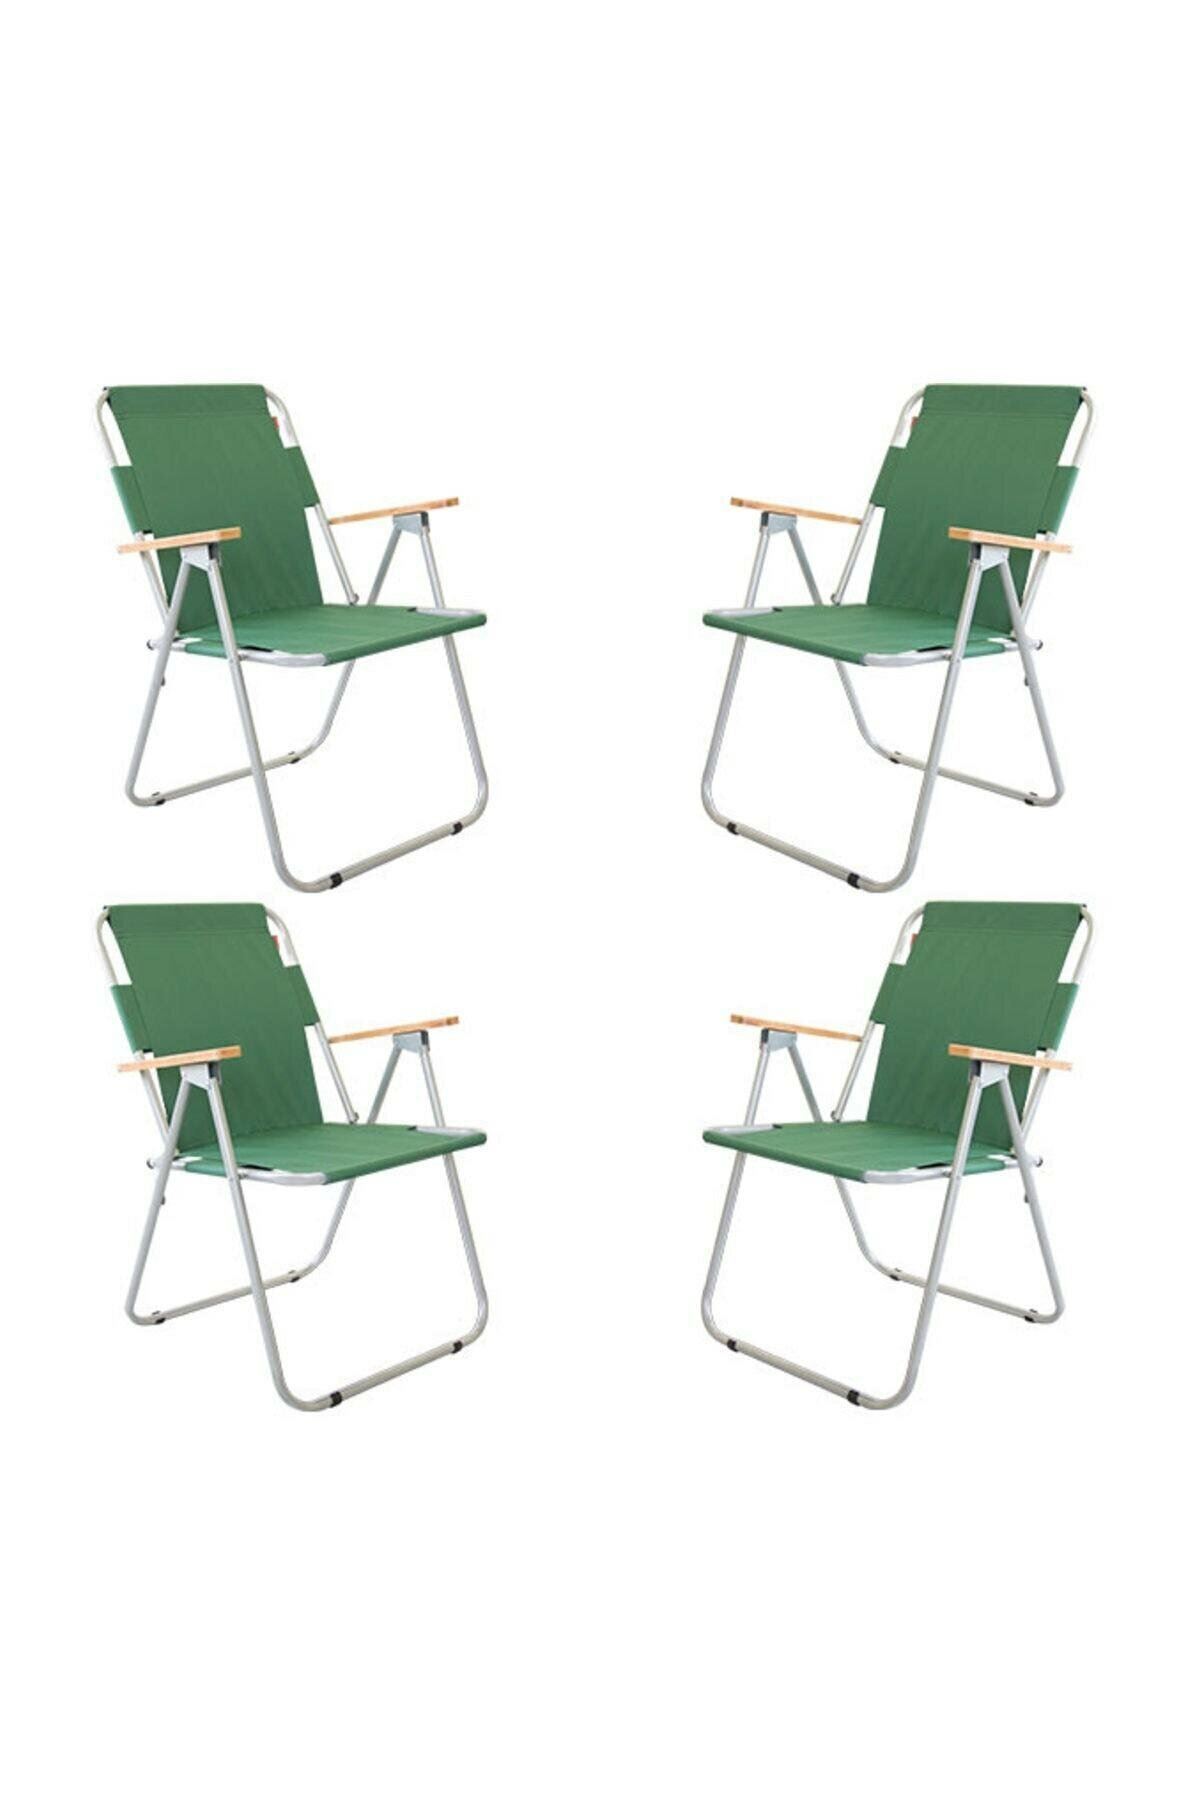 Bofigo 60x80 Çam Katlanır Masa + 4 Adet Katlanır Sandalye Kamp Seti Bahçe Balkon Takımı Yeşil